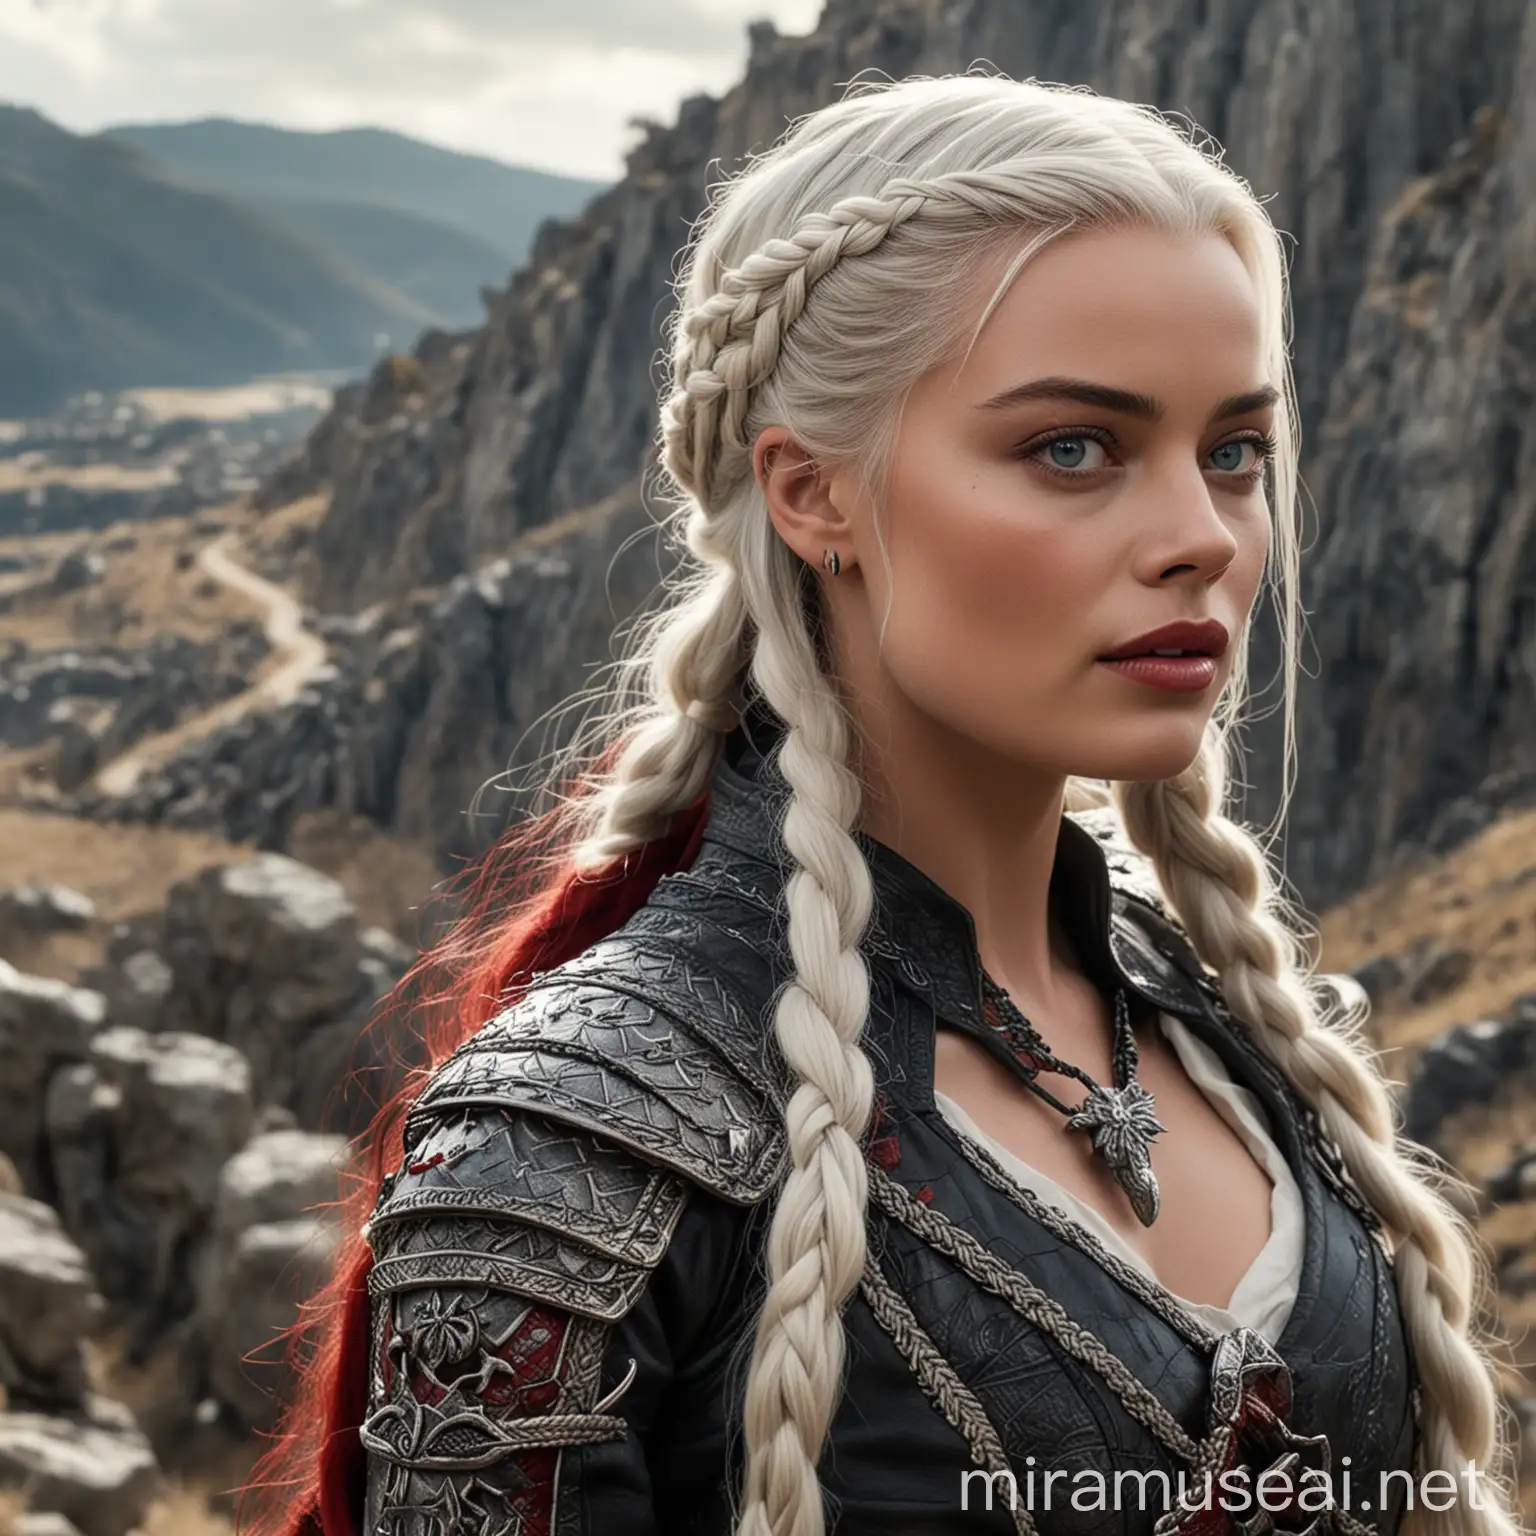 Margot Robbie en tant que princesse de la Maison Targaryen de l'Ancienne Valyria aux yeux clairs avec de longs cheveux blancs-argentés coiffés avec des tresses, portant une tenue noire et rouge typiquement Targaryen, marchant sur la pente d'une montagne ensoleillée en observant le ciel avec plénitude 